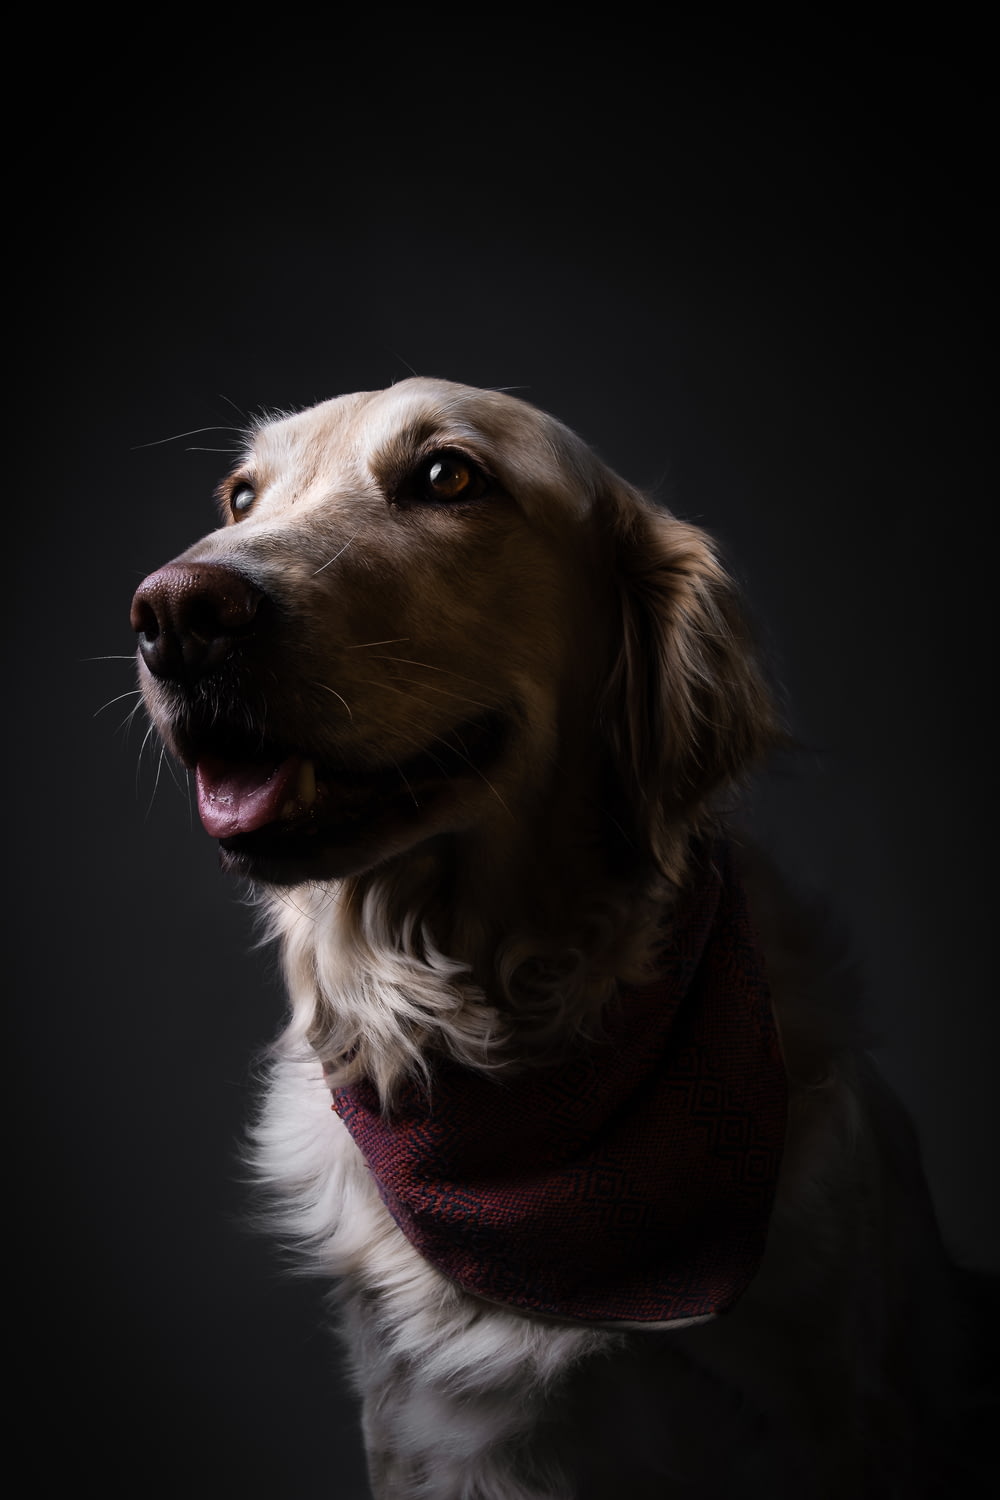 a close up of a dog wearing a bandana